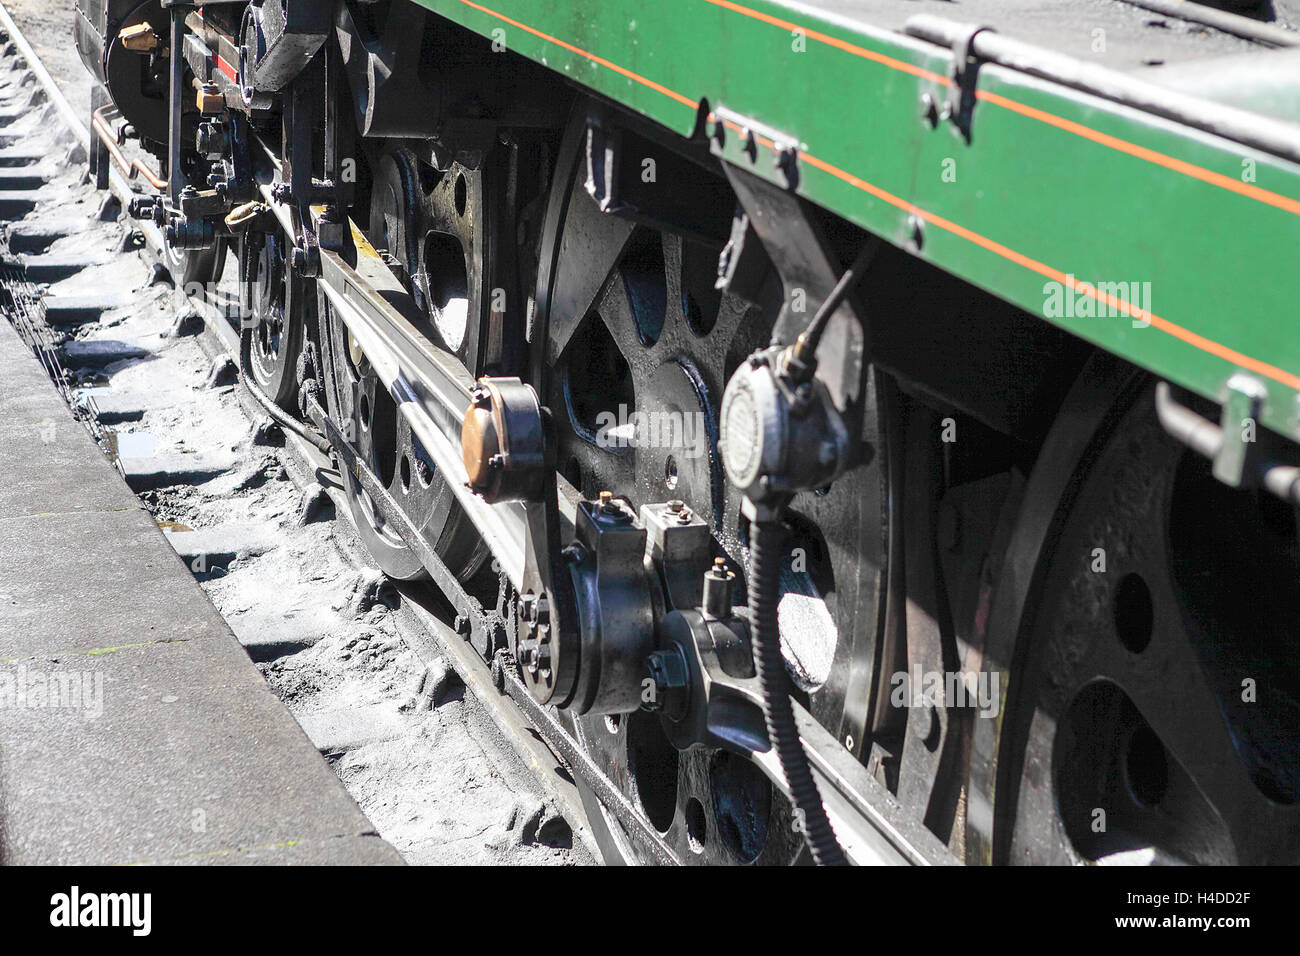 Le reliquie del vapore età visto qui sono le ruote di guida e accoppiamento rid del 'Sir Keith Park' locomotore. Foto Stock